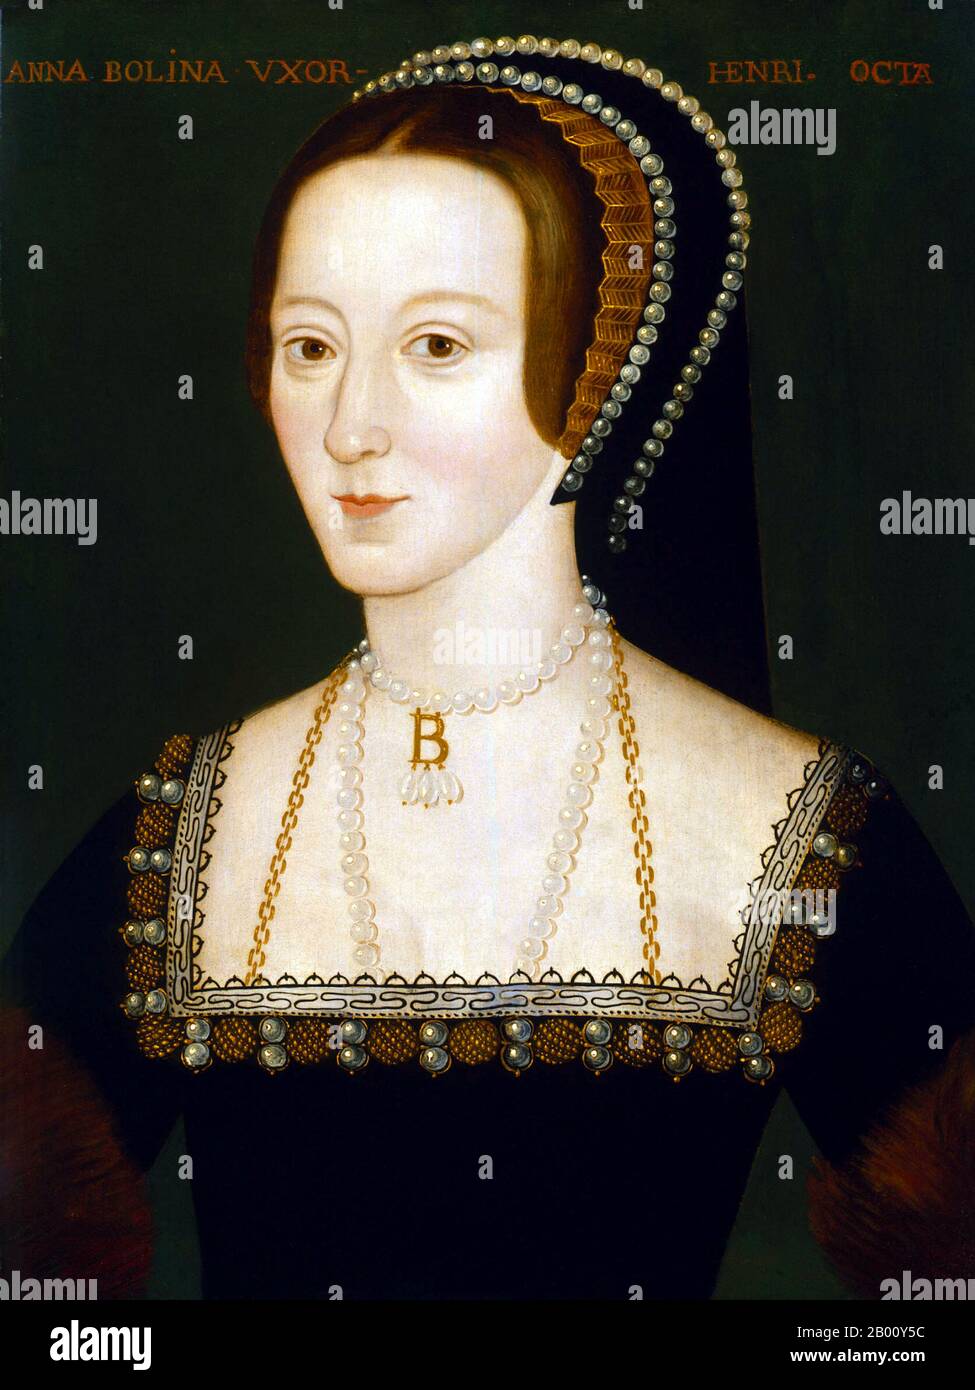 Inghilterra: Anne Boleyn (ca. 1501/1507 – 19 maggio 1536), Regina d'Inghilterra (1533-1536) e seconda moglie di Enrico VIII d'Inghilterra. Olio su pannello dipinto da un artista non identificato,. 1533-1536. Anne fu incoronata Regina d'Inghilterra il 1° giugno 1533. Il 7 settembre ha dato alla luce la futura Elisabetta i d'Inghilterra. Per disappunto di Enrico, tuttavia, non riuscì a produrre un erede maschile. Enrico non era completamente scoraggiato, perché disse che amava Elisabetta e che un figlio sarebbe sicuramente seguito. Tre aborti seguirono, tuttavia, e nel marzo 1536, Enrico stava corteggiando Jane Seymour. È stata decapitata il 19 maggio. Foto Stock